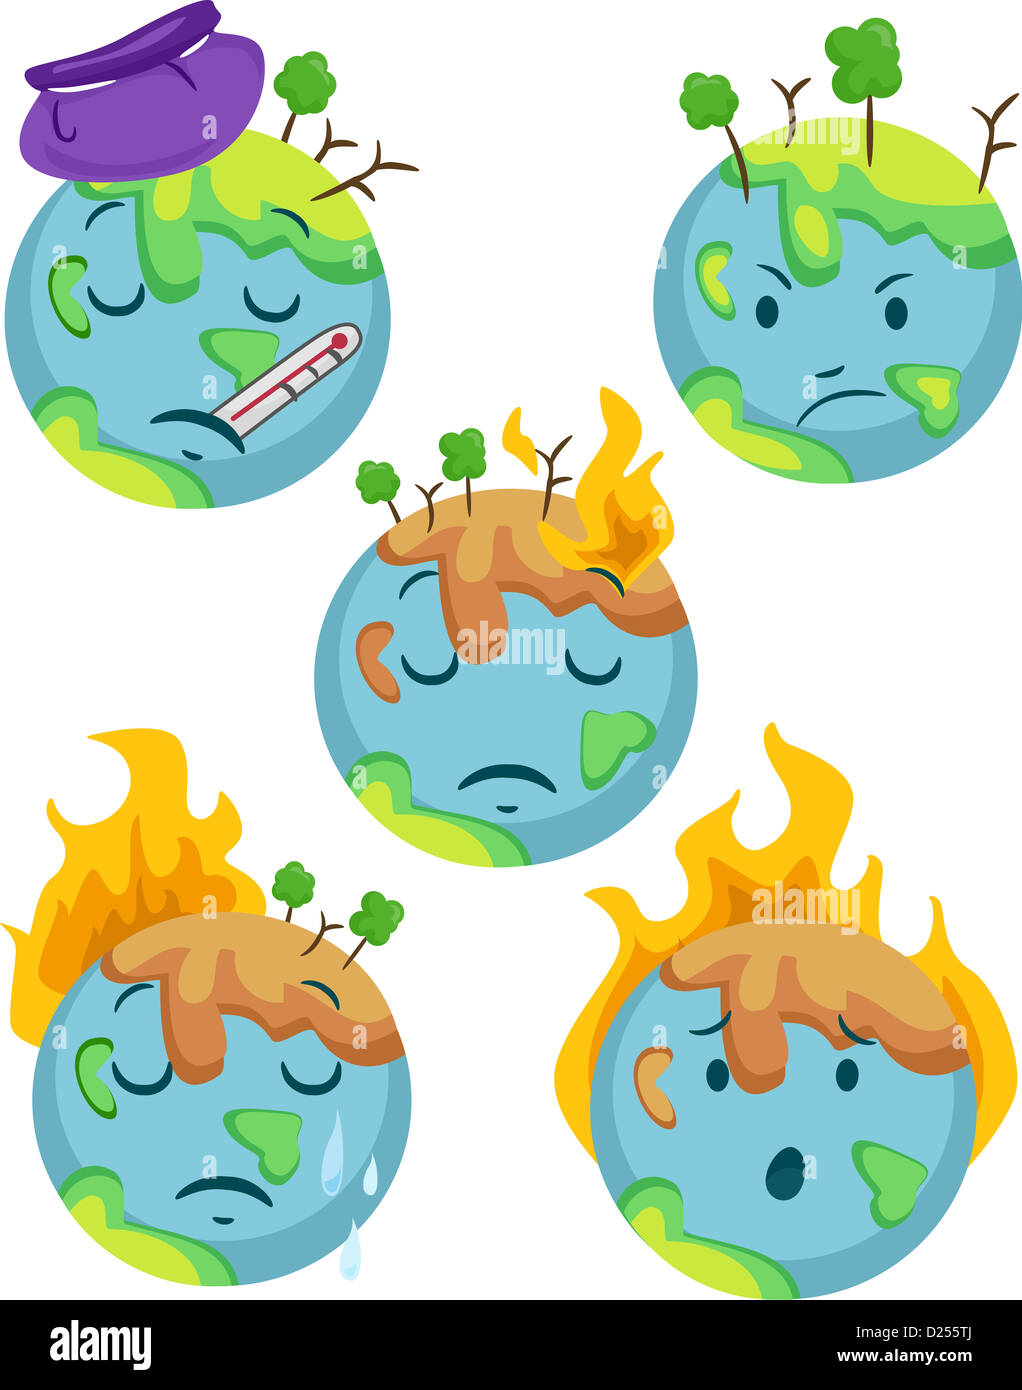 Ilustración del planeta enfermo iconos con diferentes expresiones negativas Foto de stock